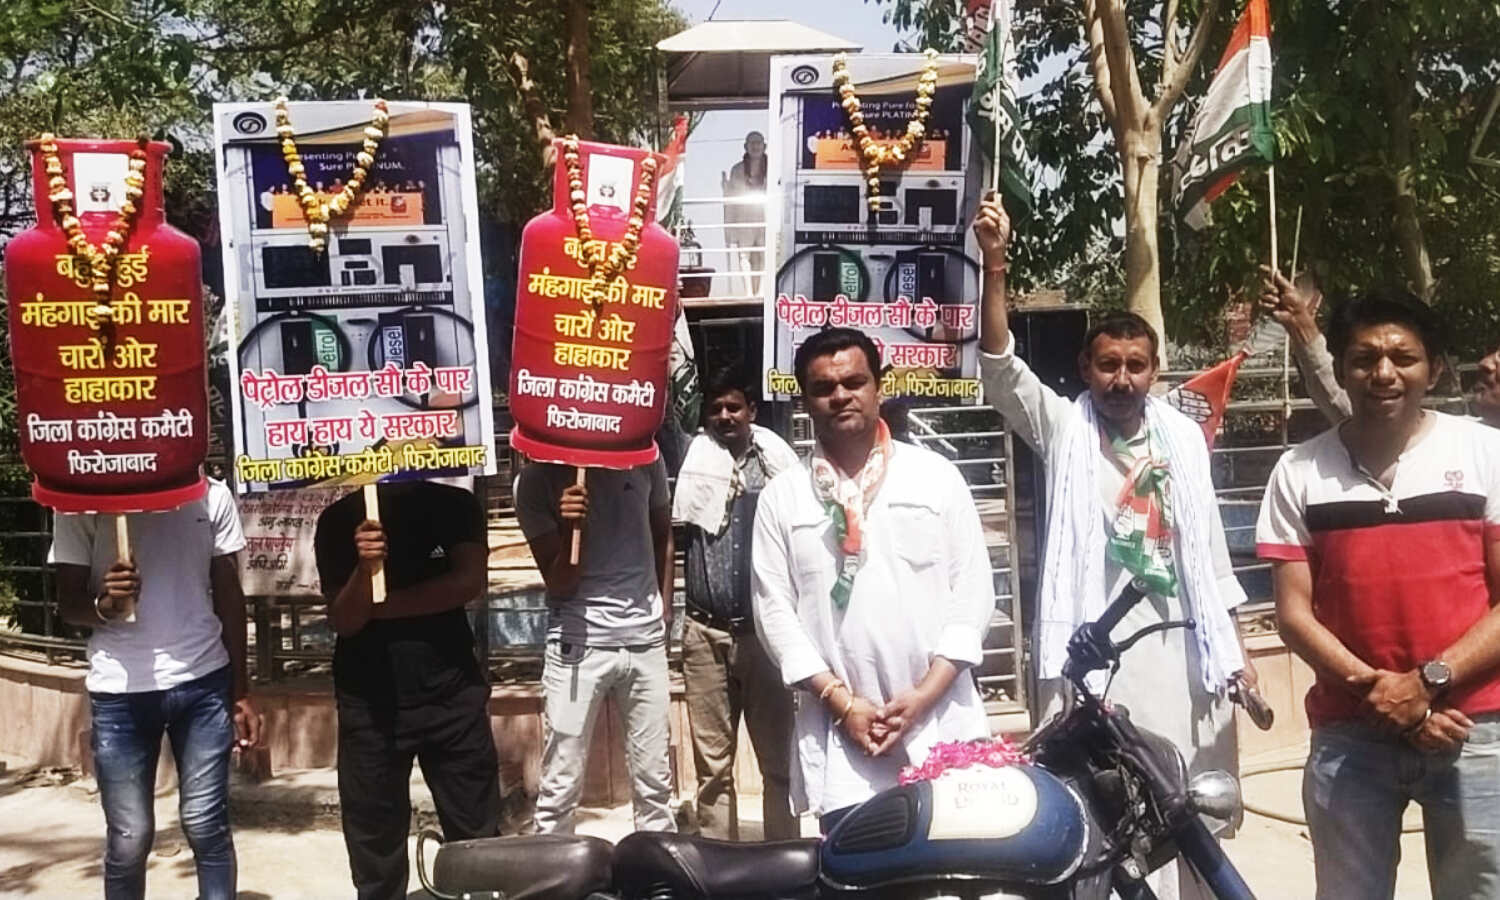 Petrol-Diesel Price Hike : मोदी सरकार ने देश के लोगों के साथ किया धोखा और विश्वासघात, फिरोजाबाद में कांग्रेस ने किया प्रदर्शन